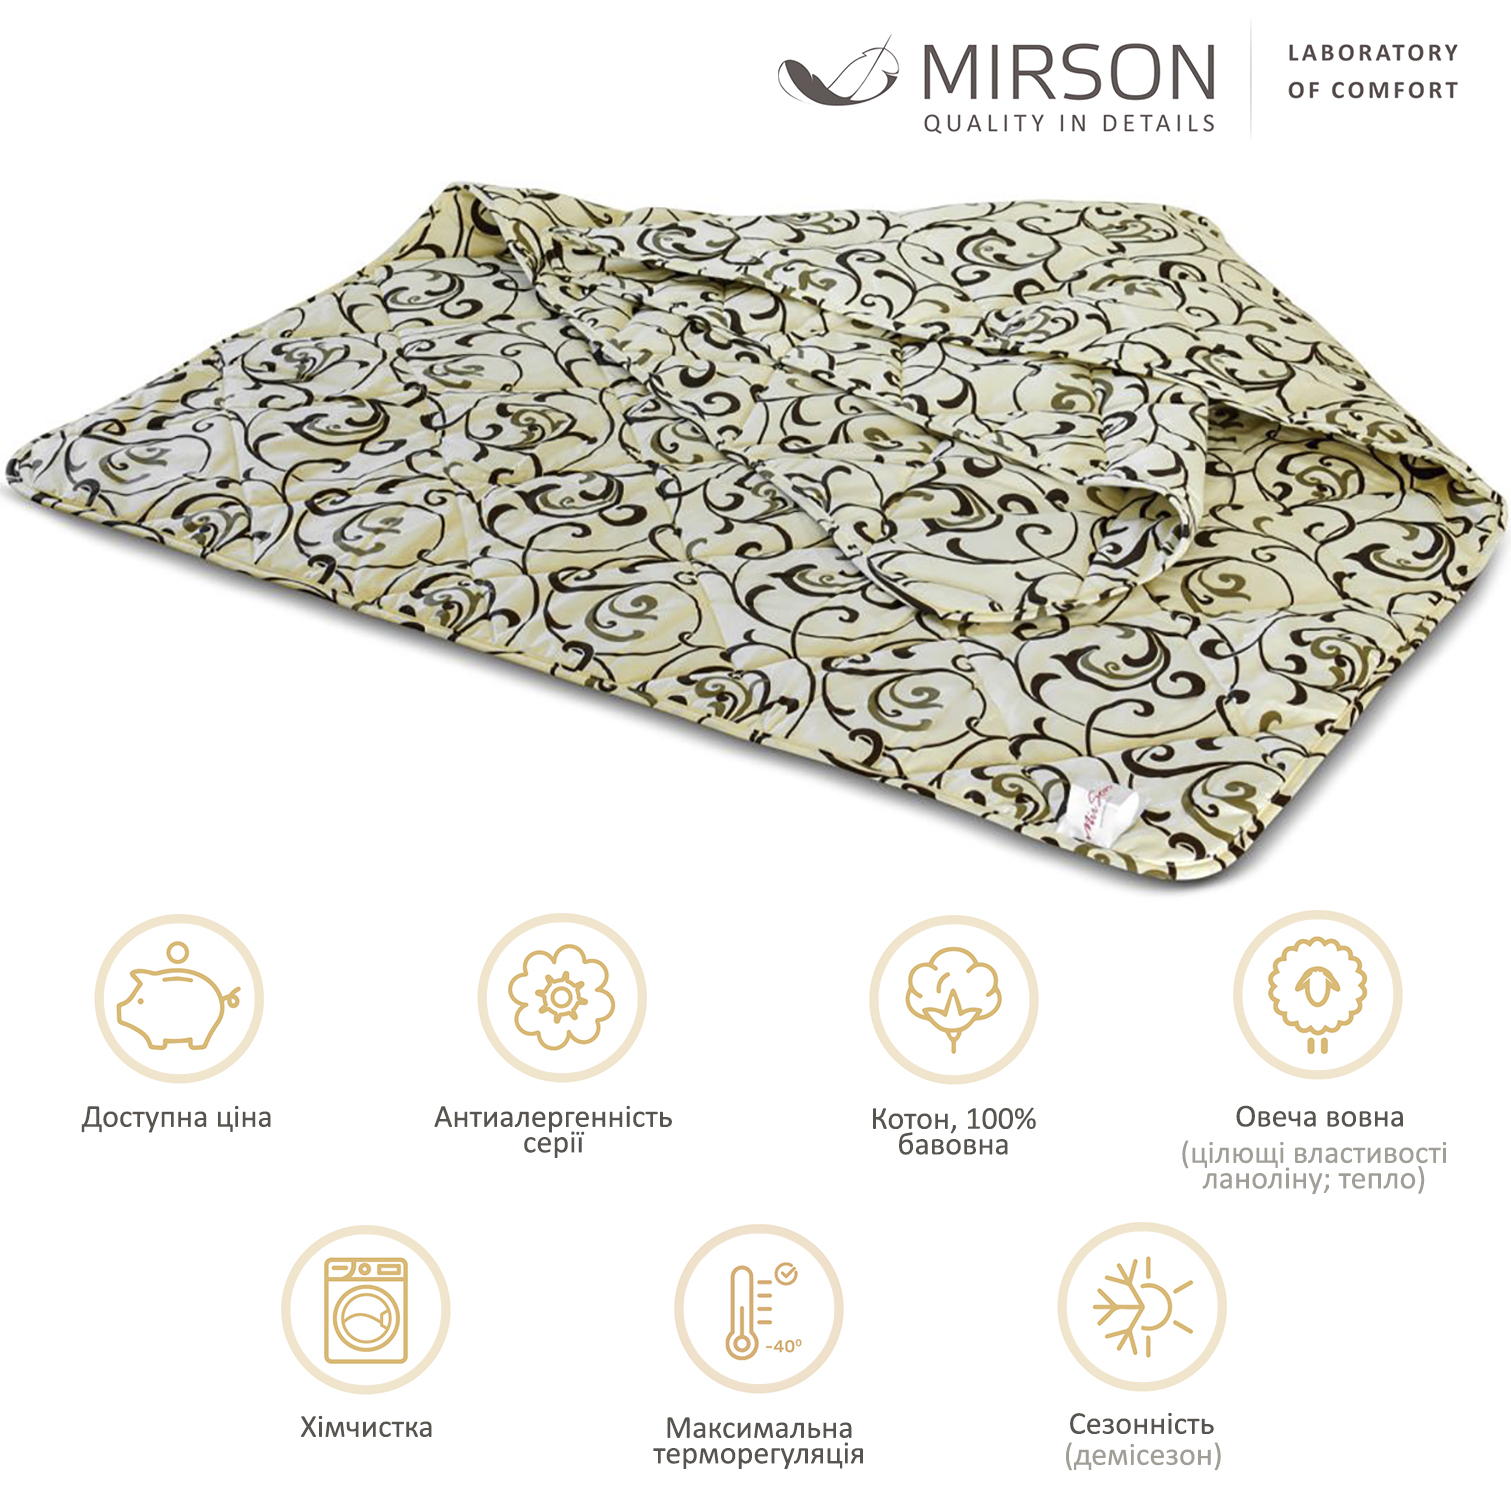 Одеяло шерстяное MirSon №017, демисезонное, 140x205 см, бежевое с узором - фото 4